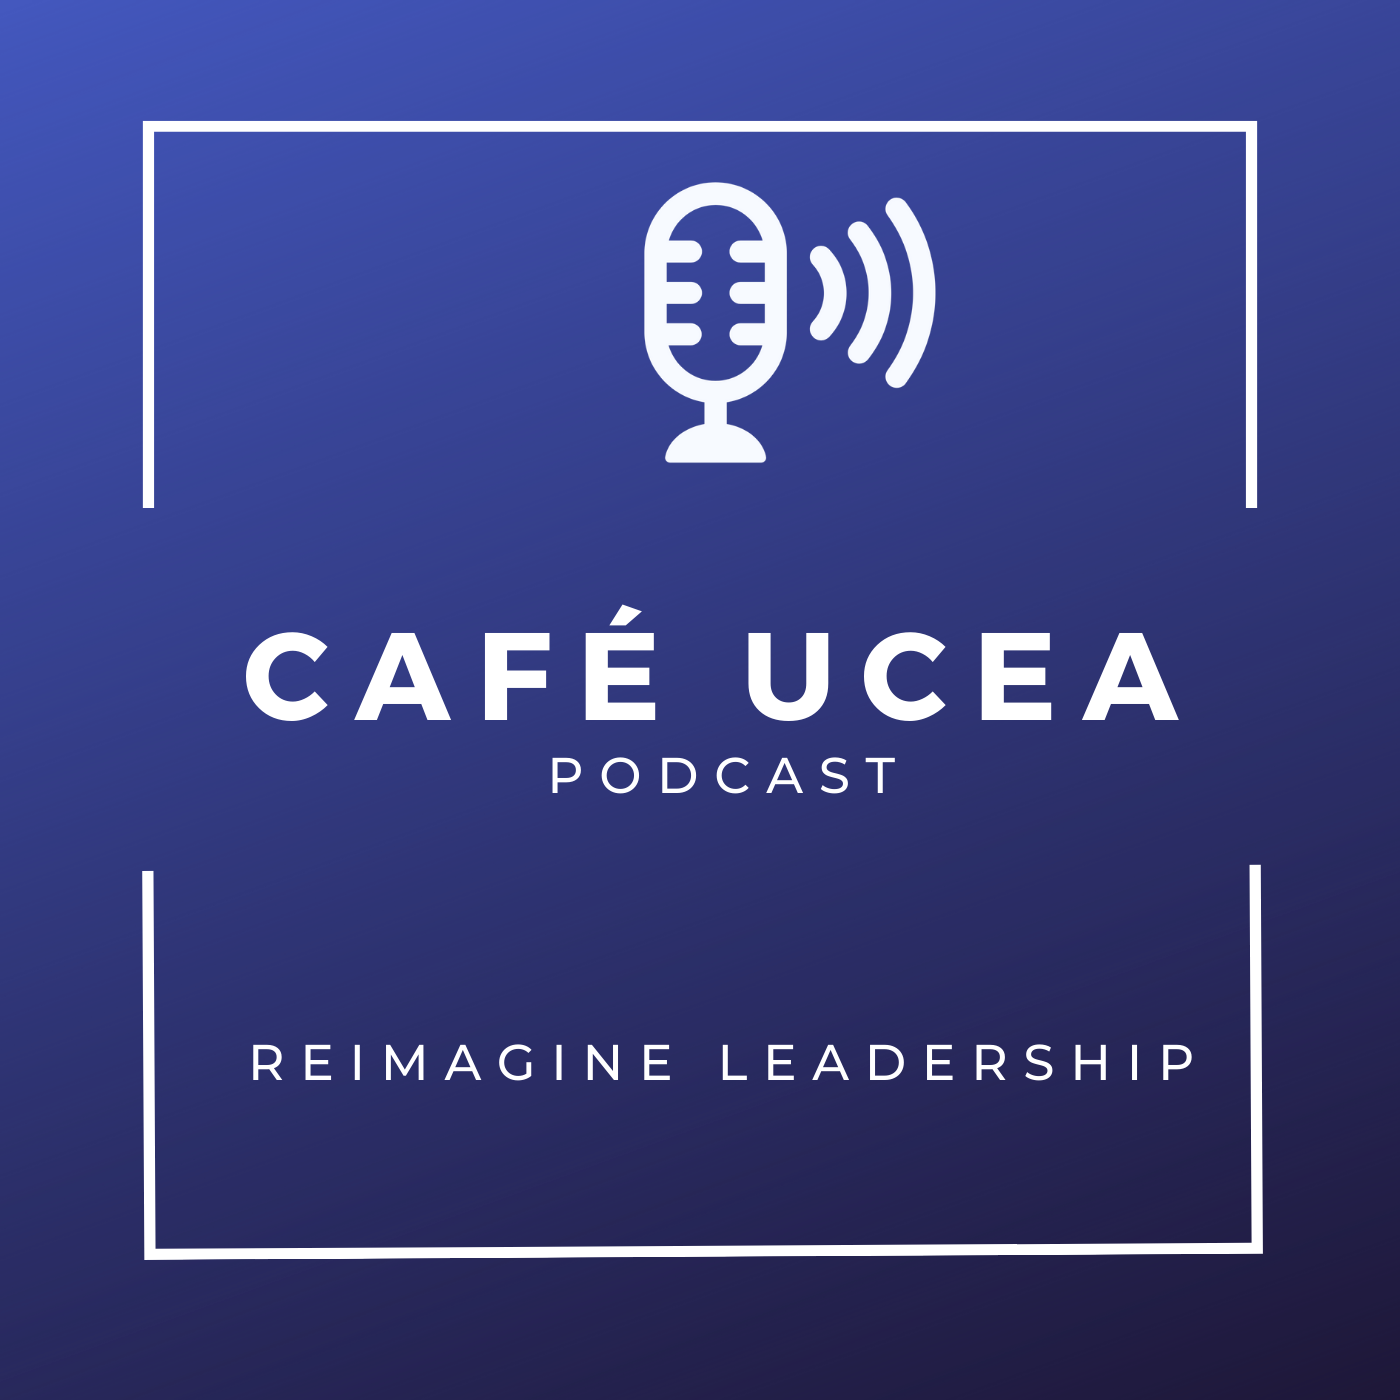 Artwork for podcast Café UCEA